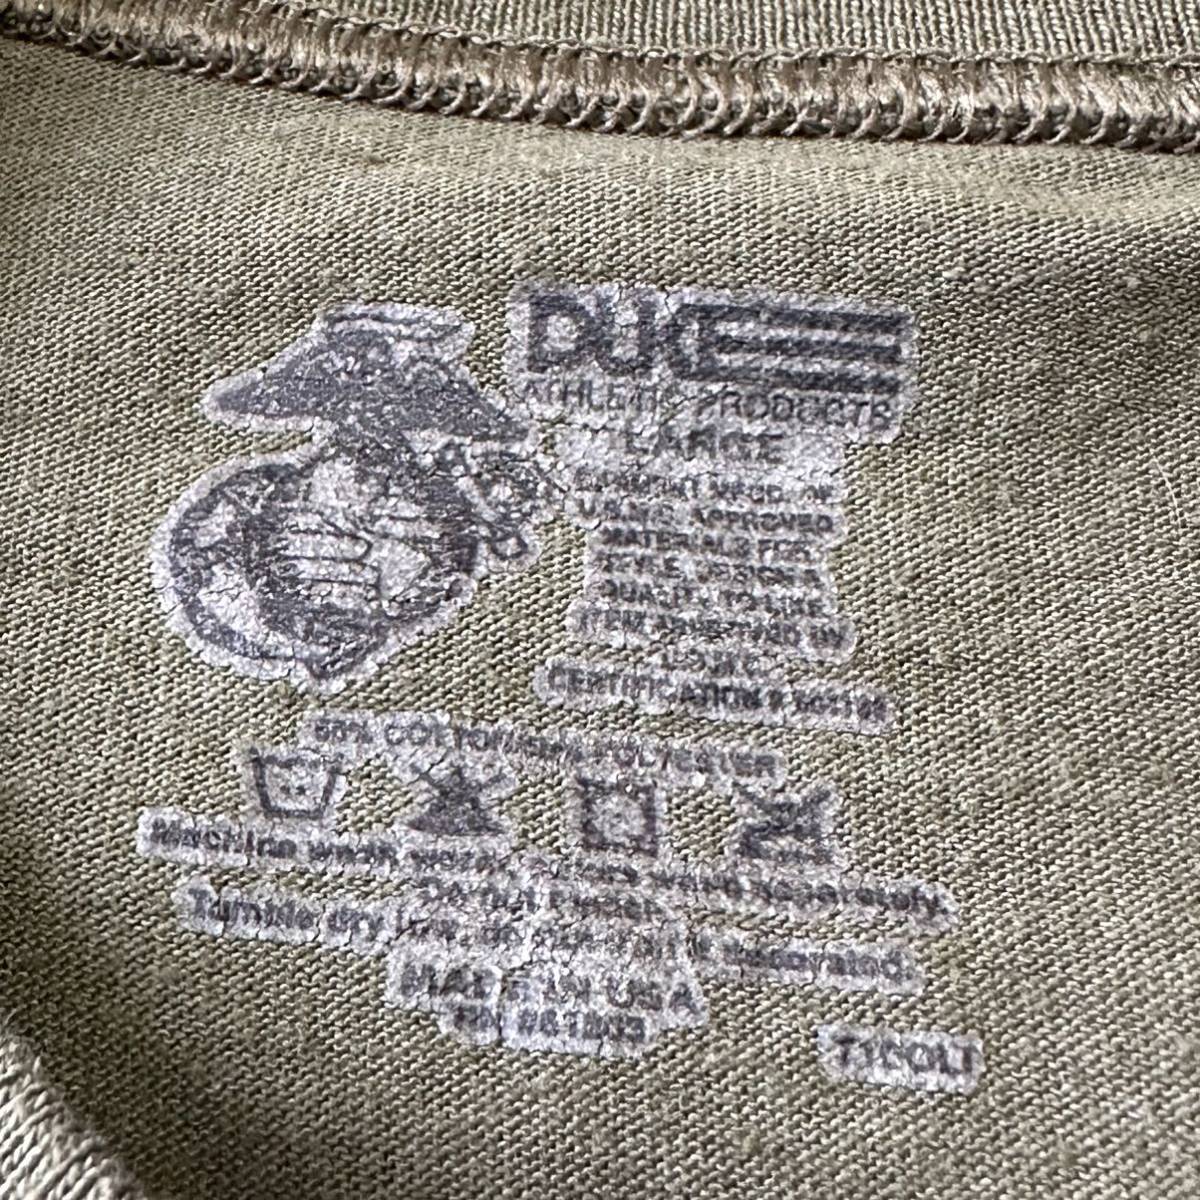 沖縄 海兵隊実物 USMC MARINE DUKE ミリタリー Tシャツ トレーニング ランニング 筋トレ スポーツ LARGE OD (管理番号I54)_画像3